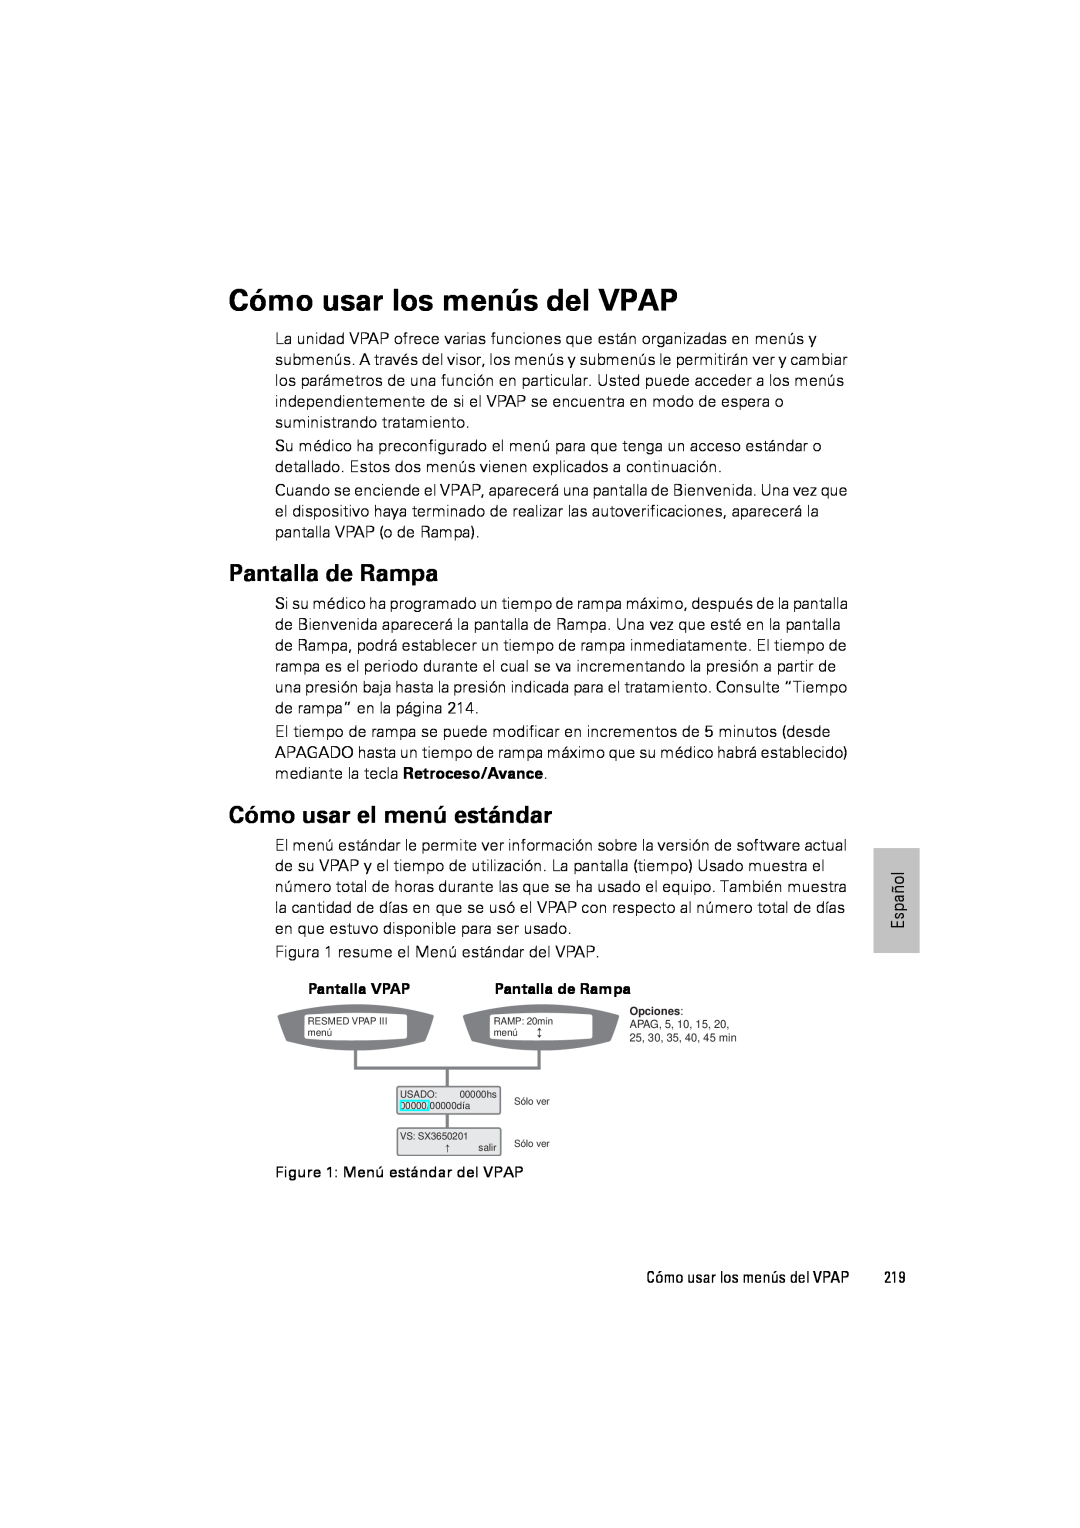 ResMed III & III ST user manual Cómo usar los menús del VPAP, Pantalla de Rampa, Cómo usar el menú estándar 